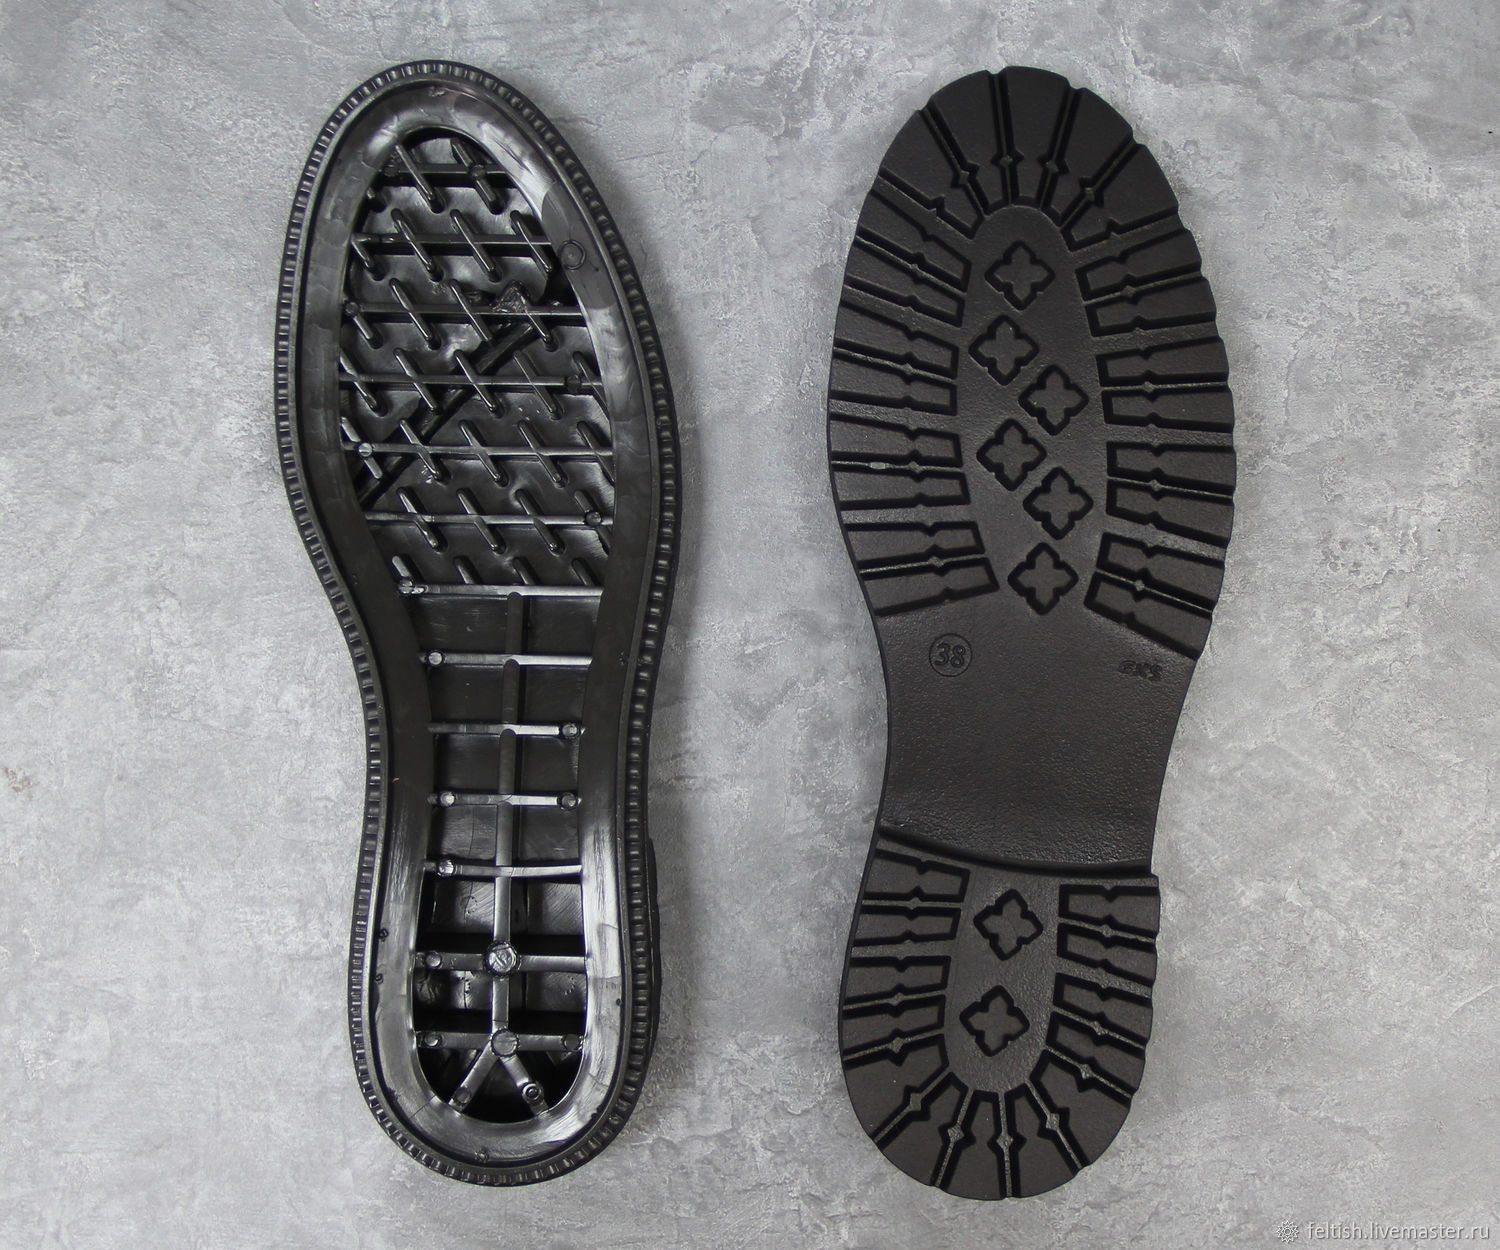 Жесткая подошва обуви. Подошва для обуви. Подметка обуви. Форма подошвы обуви. Материал для изготовления подошвы обуви.